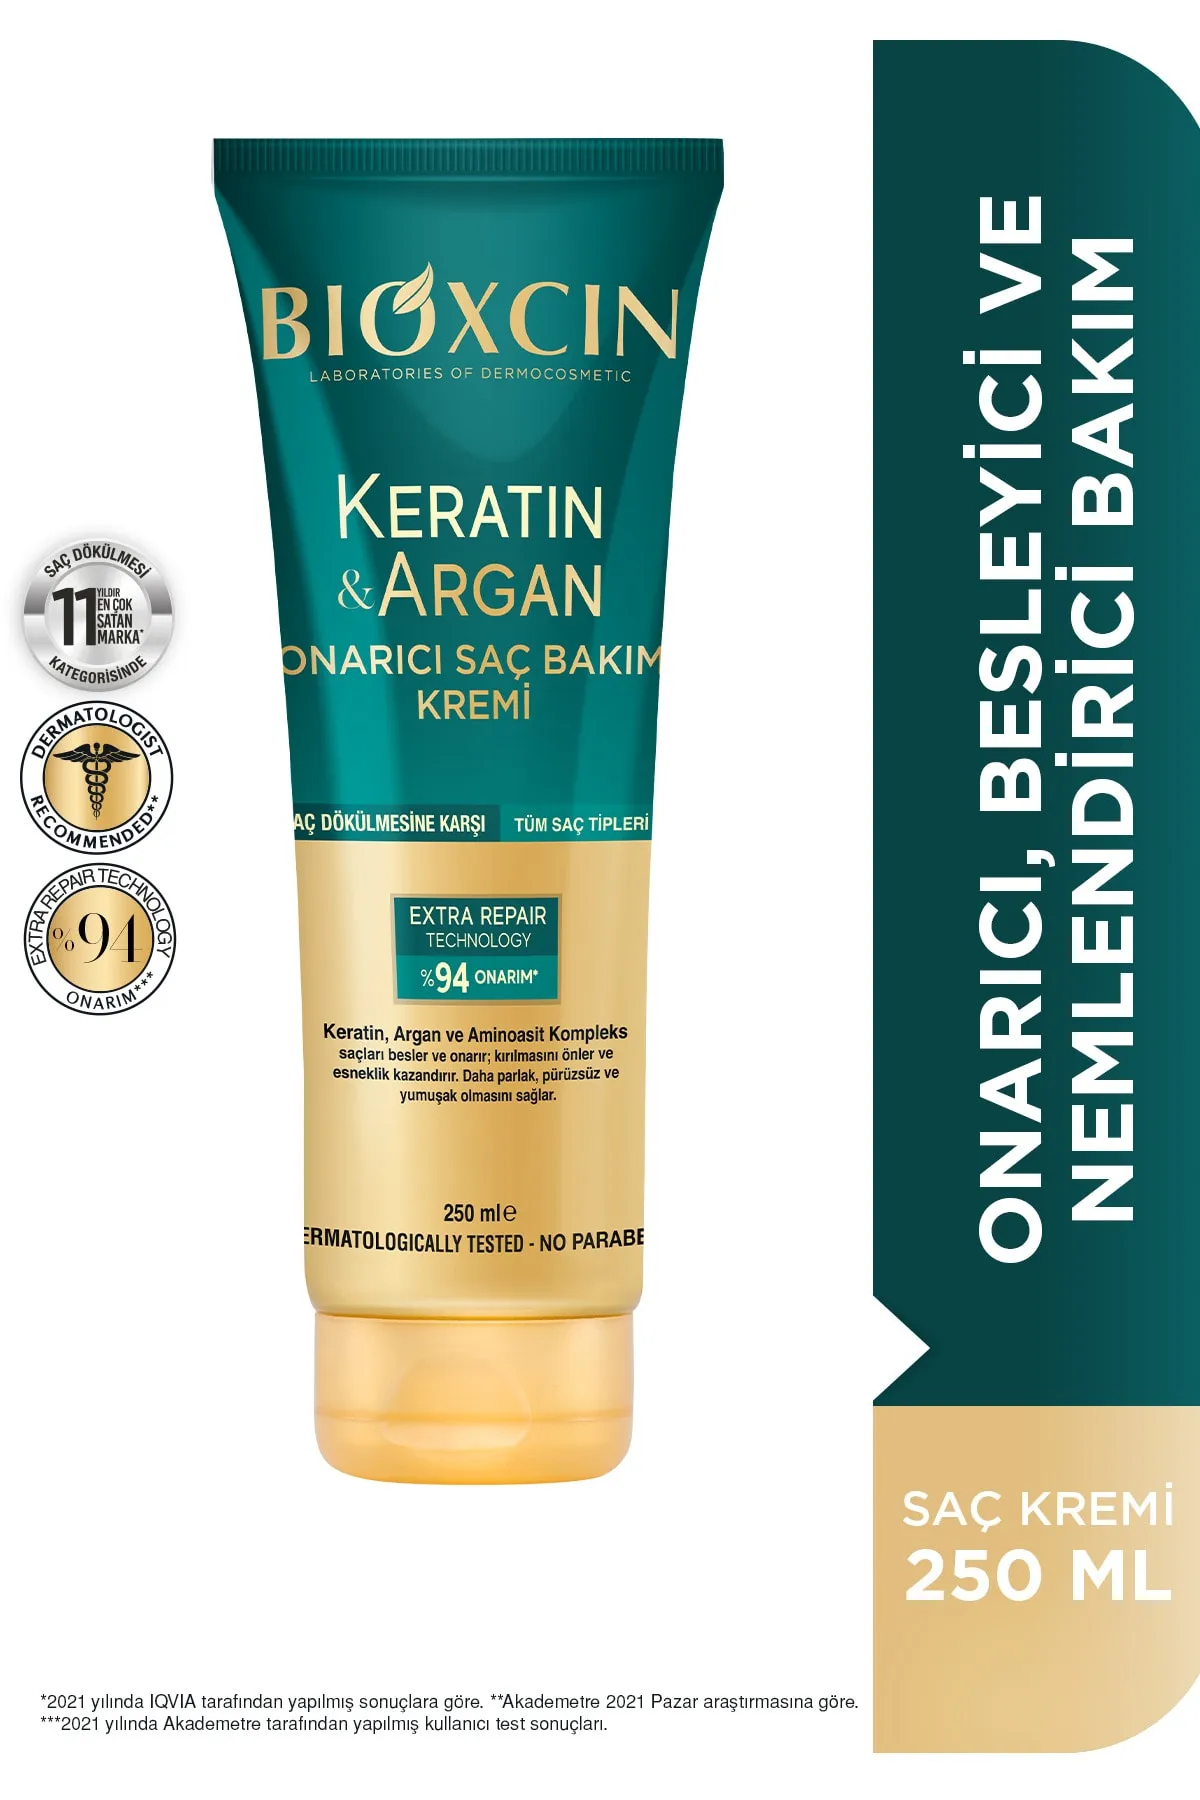 Bioxcin Saç Bakım Kremi Onarıcı Keratin & Argan 250 ml - Bioxcin